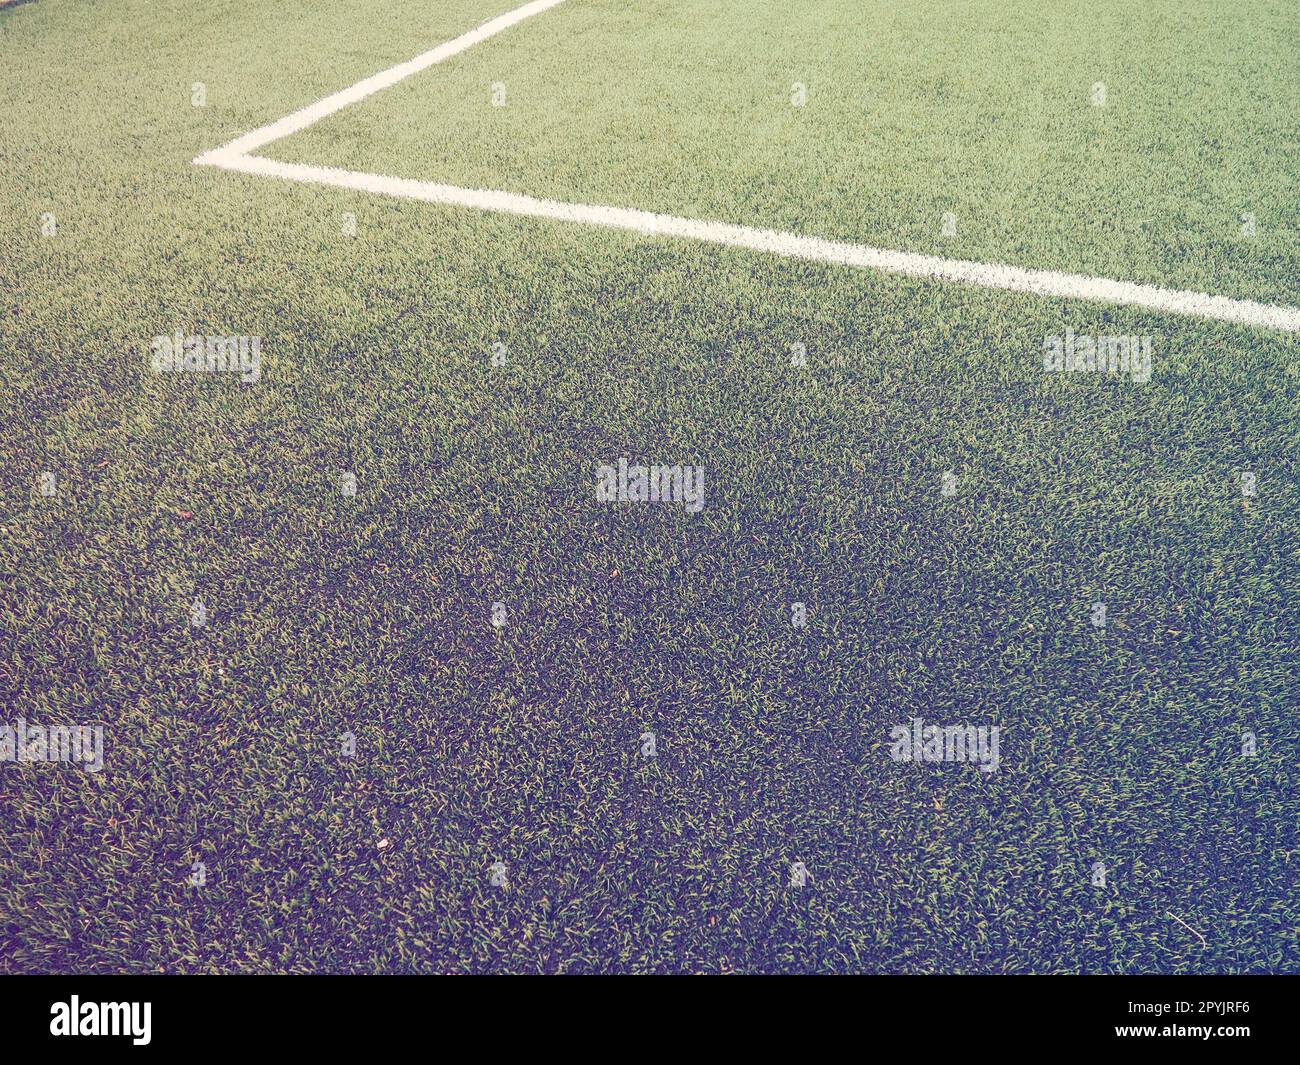 Die Markierung des Fußballfeldes auf dem grünen Gras. Weiße Linien mit einer Breite von maximal 12 cm oder 5 Zoll. Fußballfeld. Seitenlinien, Torlinien. Sonnenblende. Farbe und Lichtverlauf Stockfoto